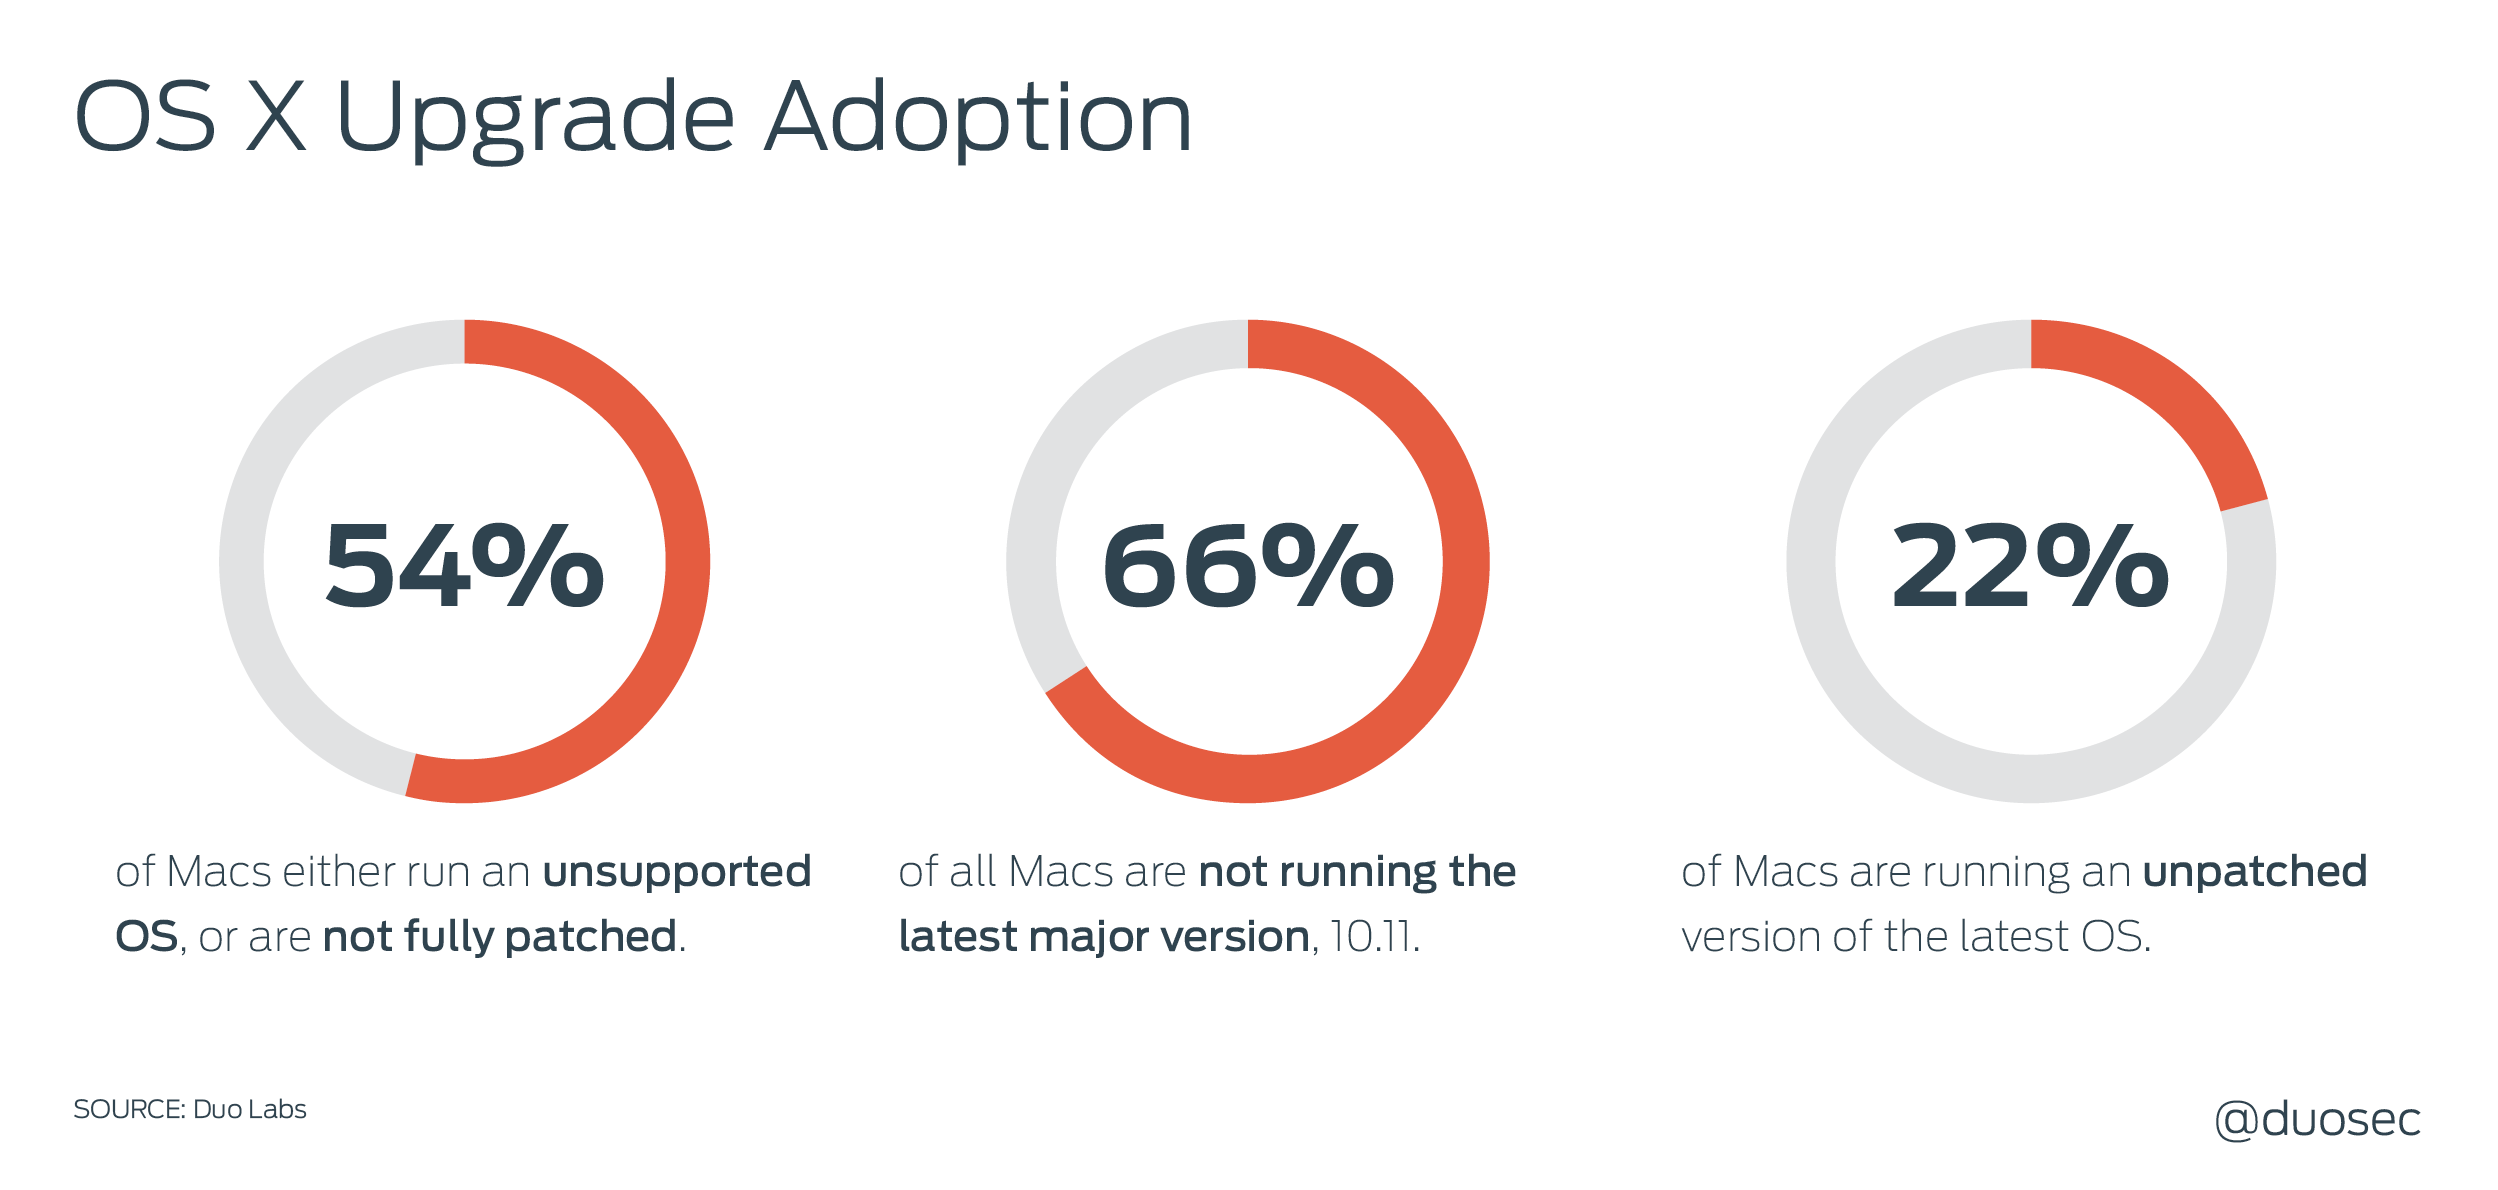 OS X Upgrade Adoption